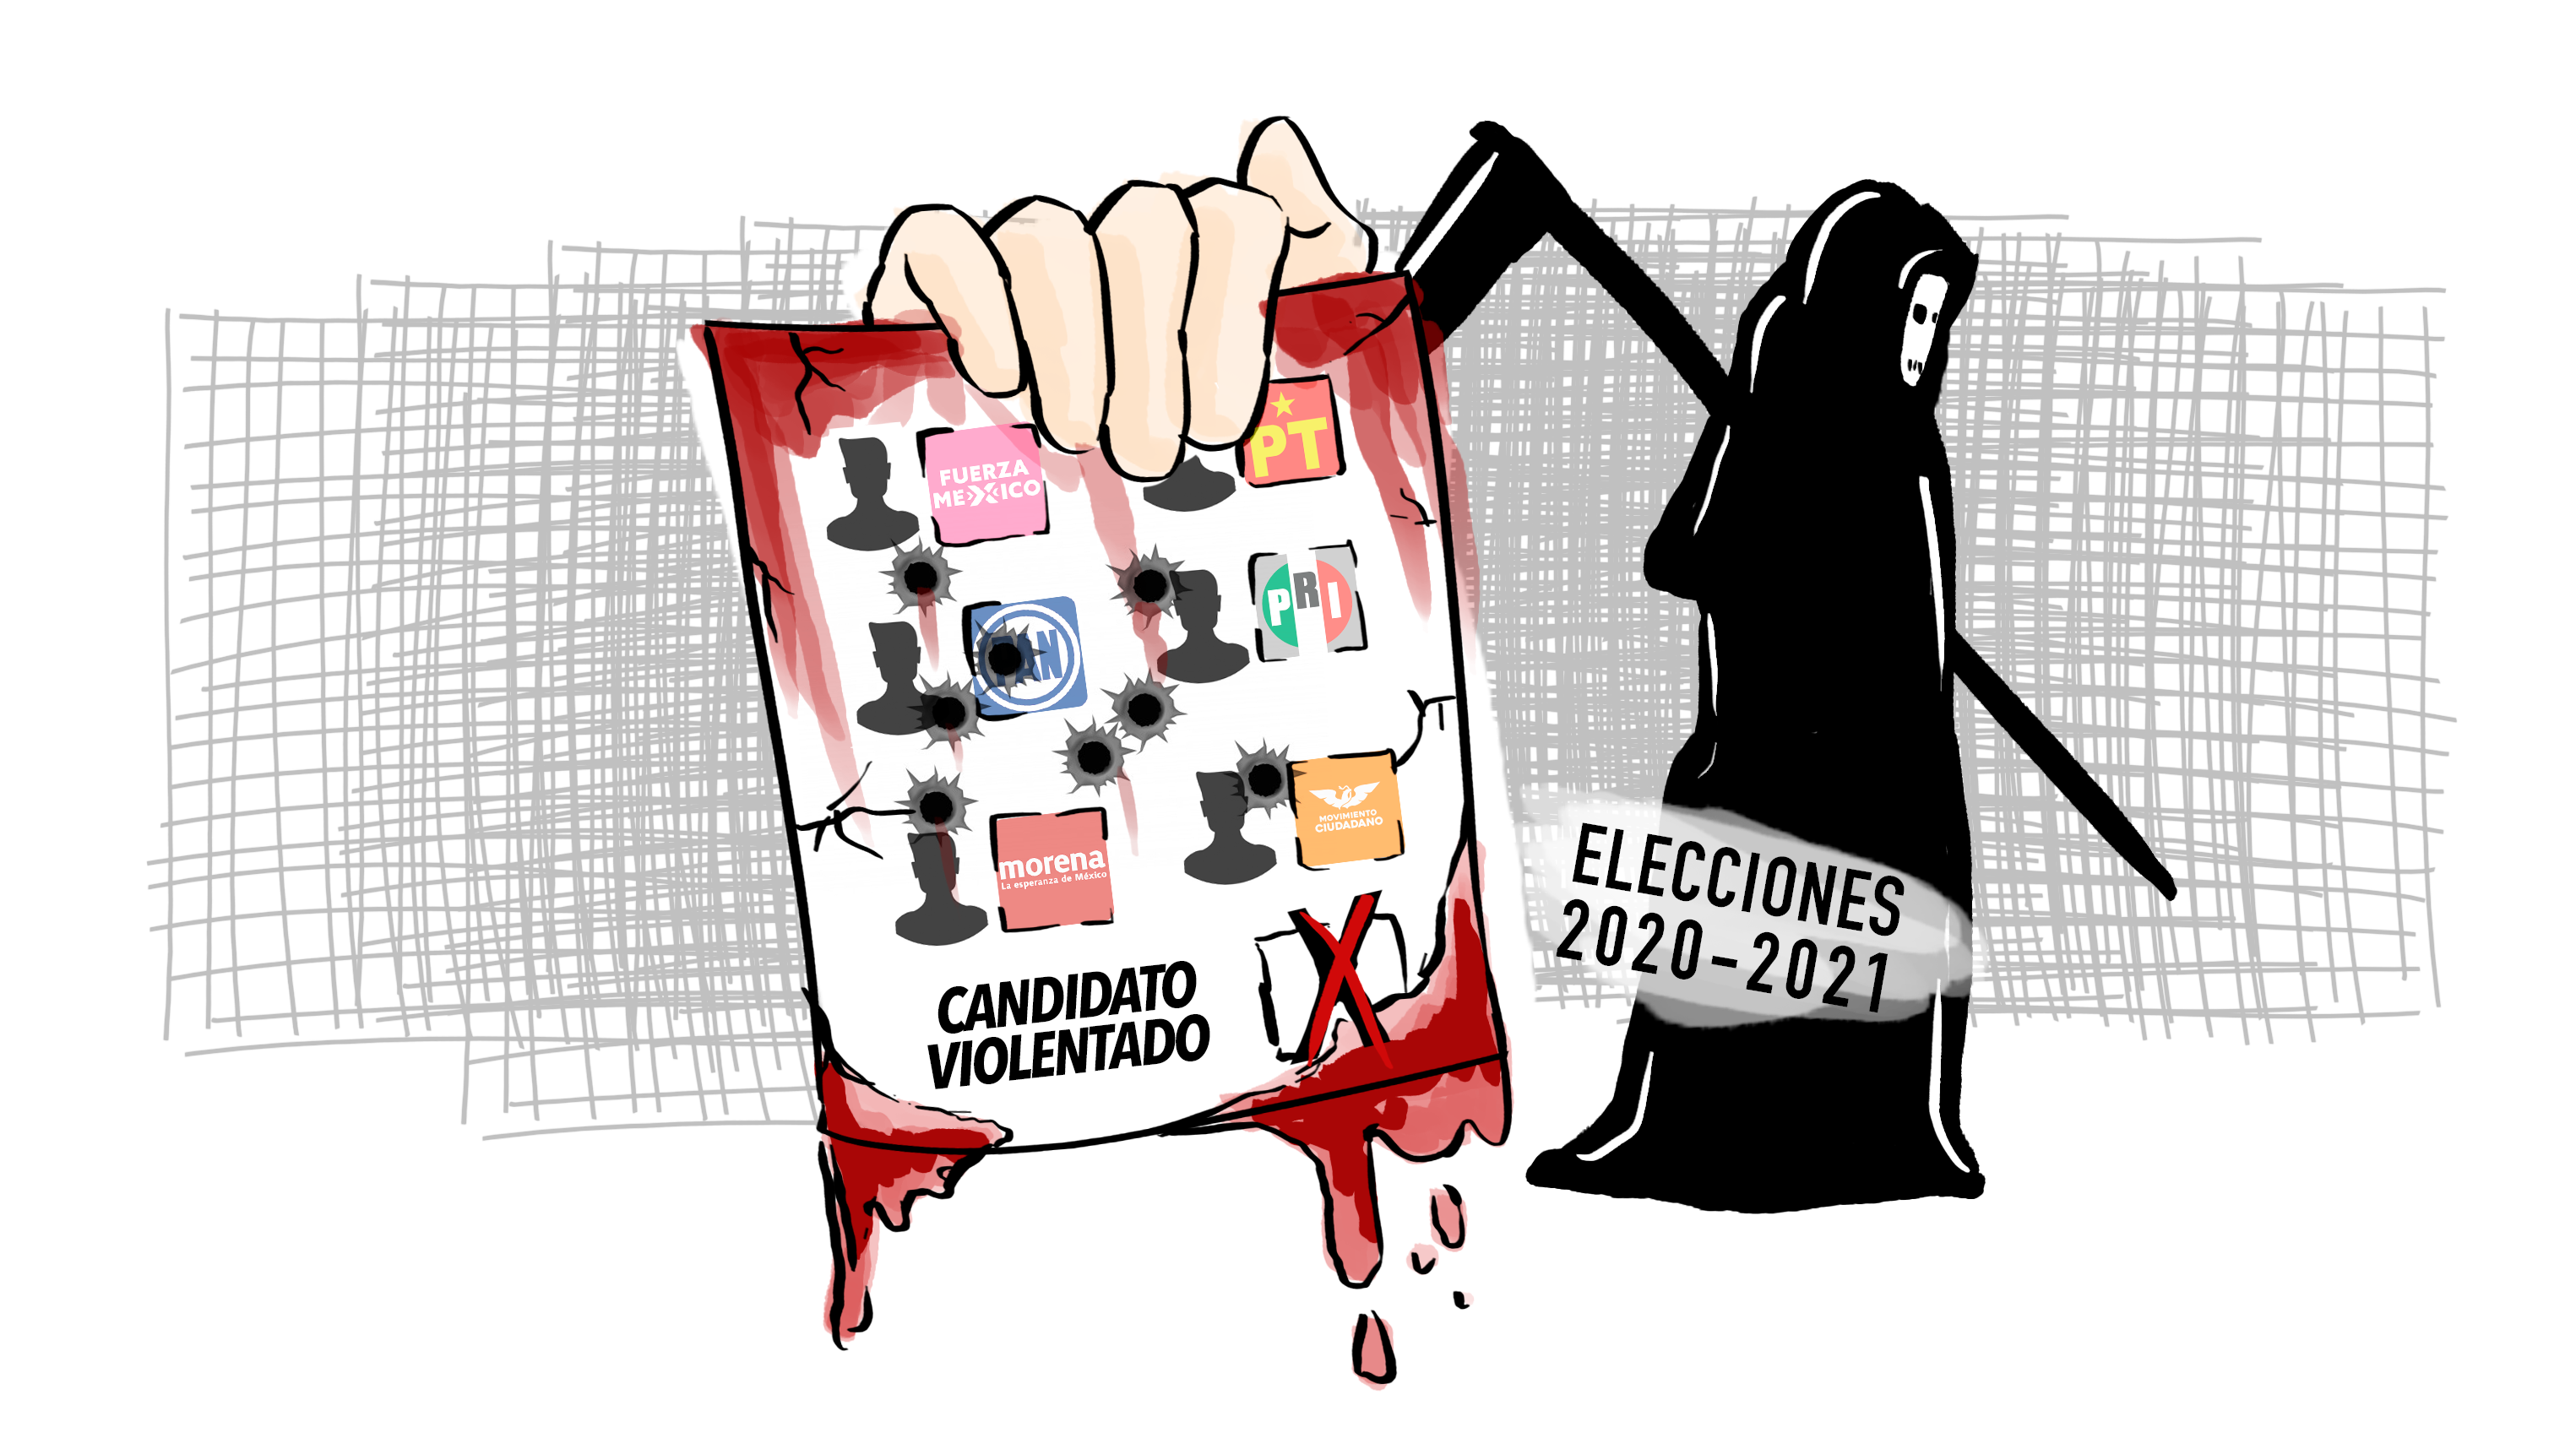 Violencia electoral, el lastre de Morena